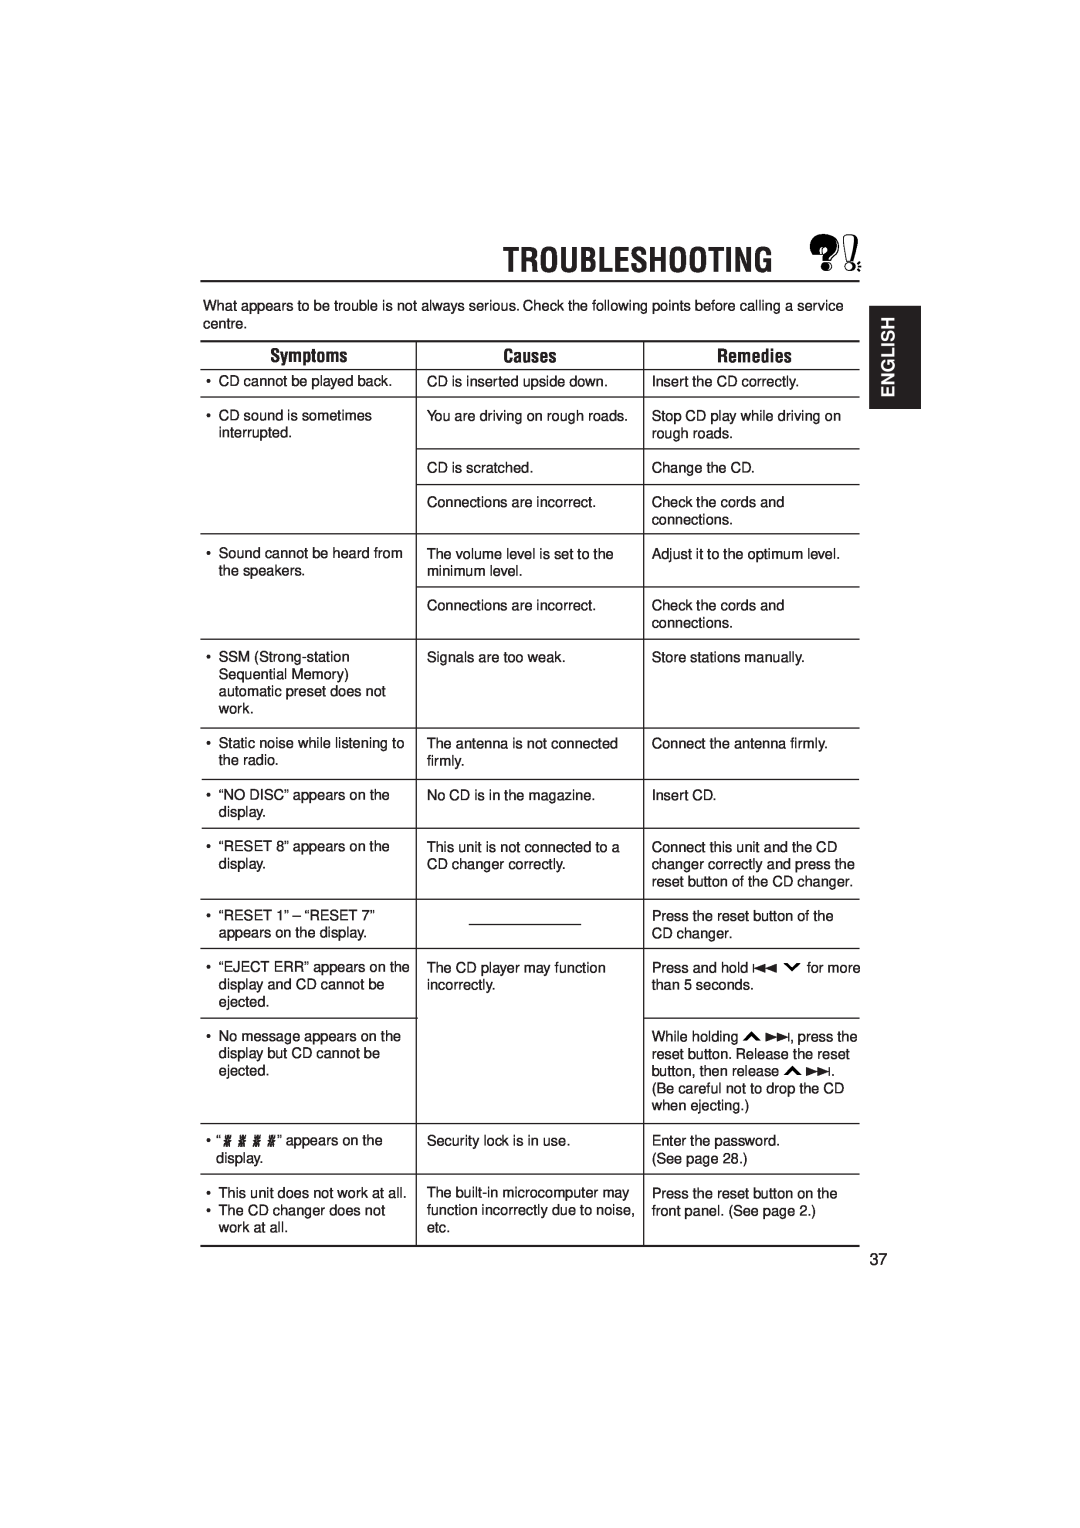 JVC KD-LX330R manual Troubleshooting, Symptoms, Causes, Remedies, English 